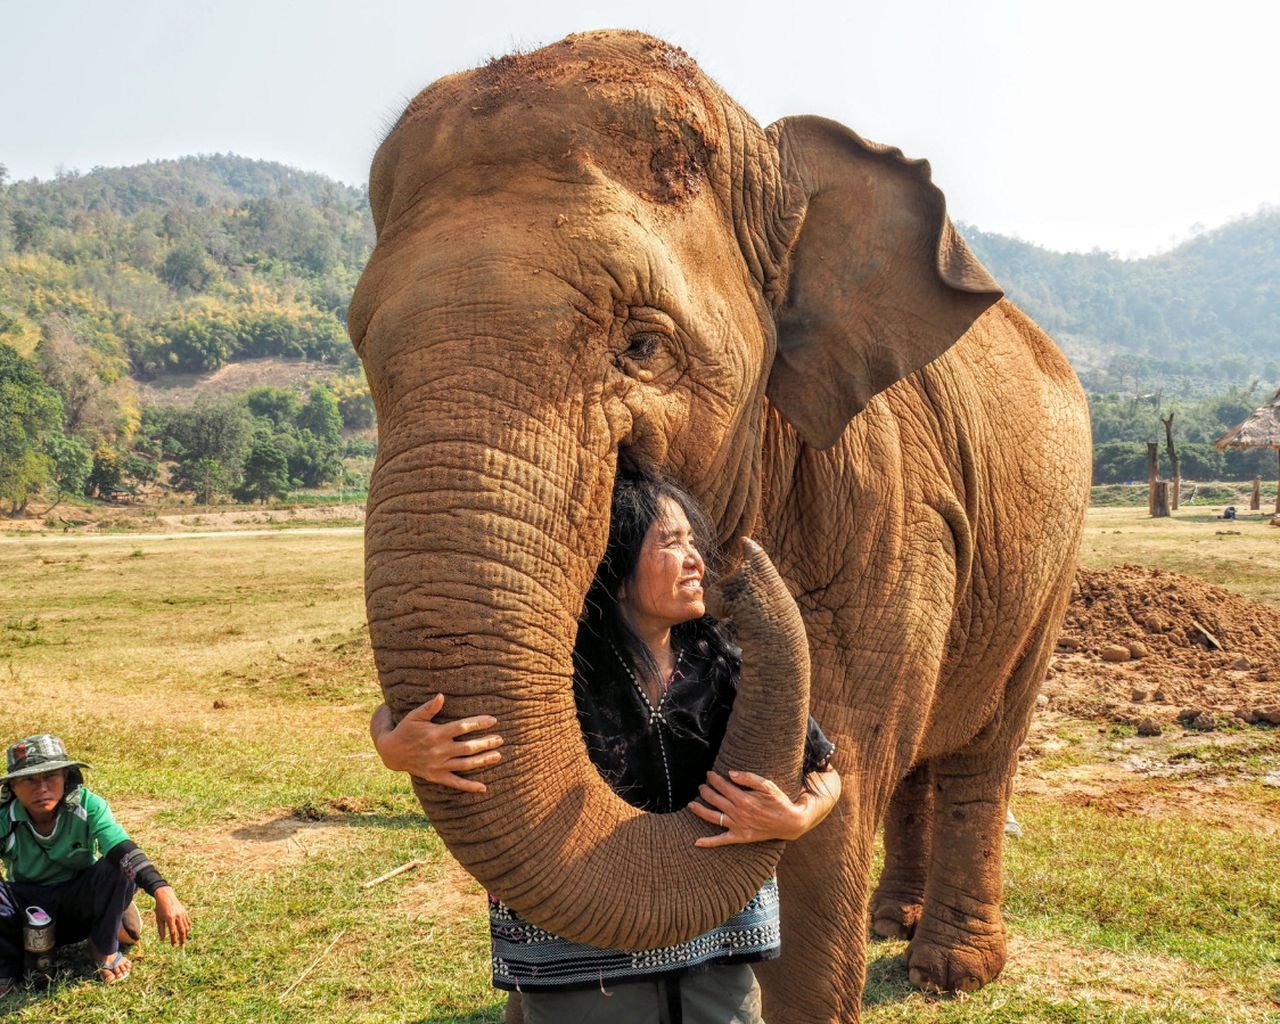 Lek Chailert, founder of Elephant Nature Park